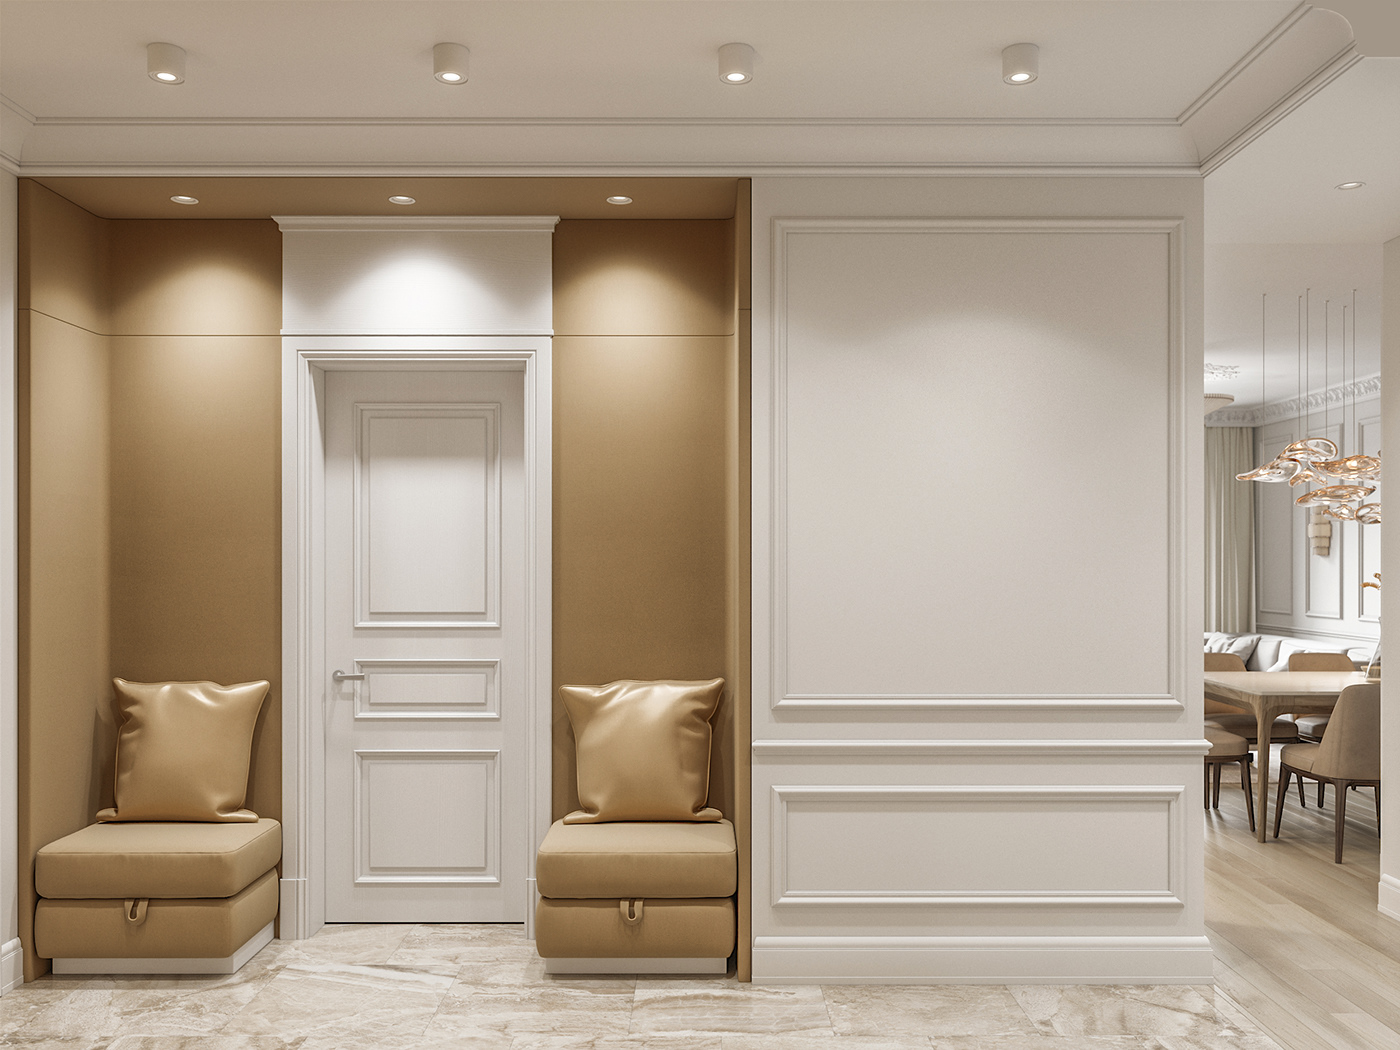 visualisation CG 3D design Interior визуализация проект интерьер Кухня гостиная cozy